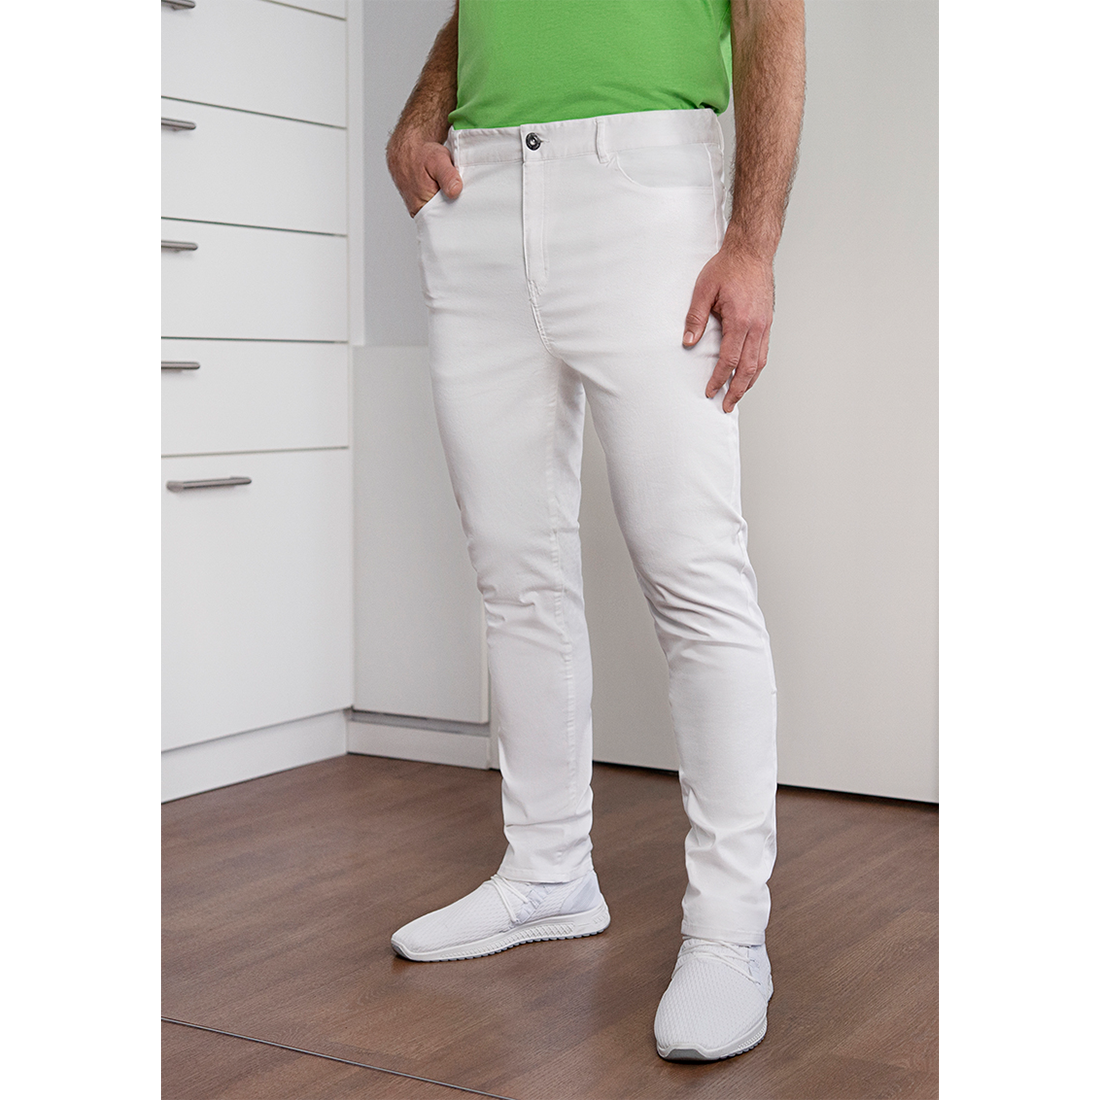 Pantalón Classic-Stretch con 5 bolsillos para hombres - Ropa de protección